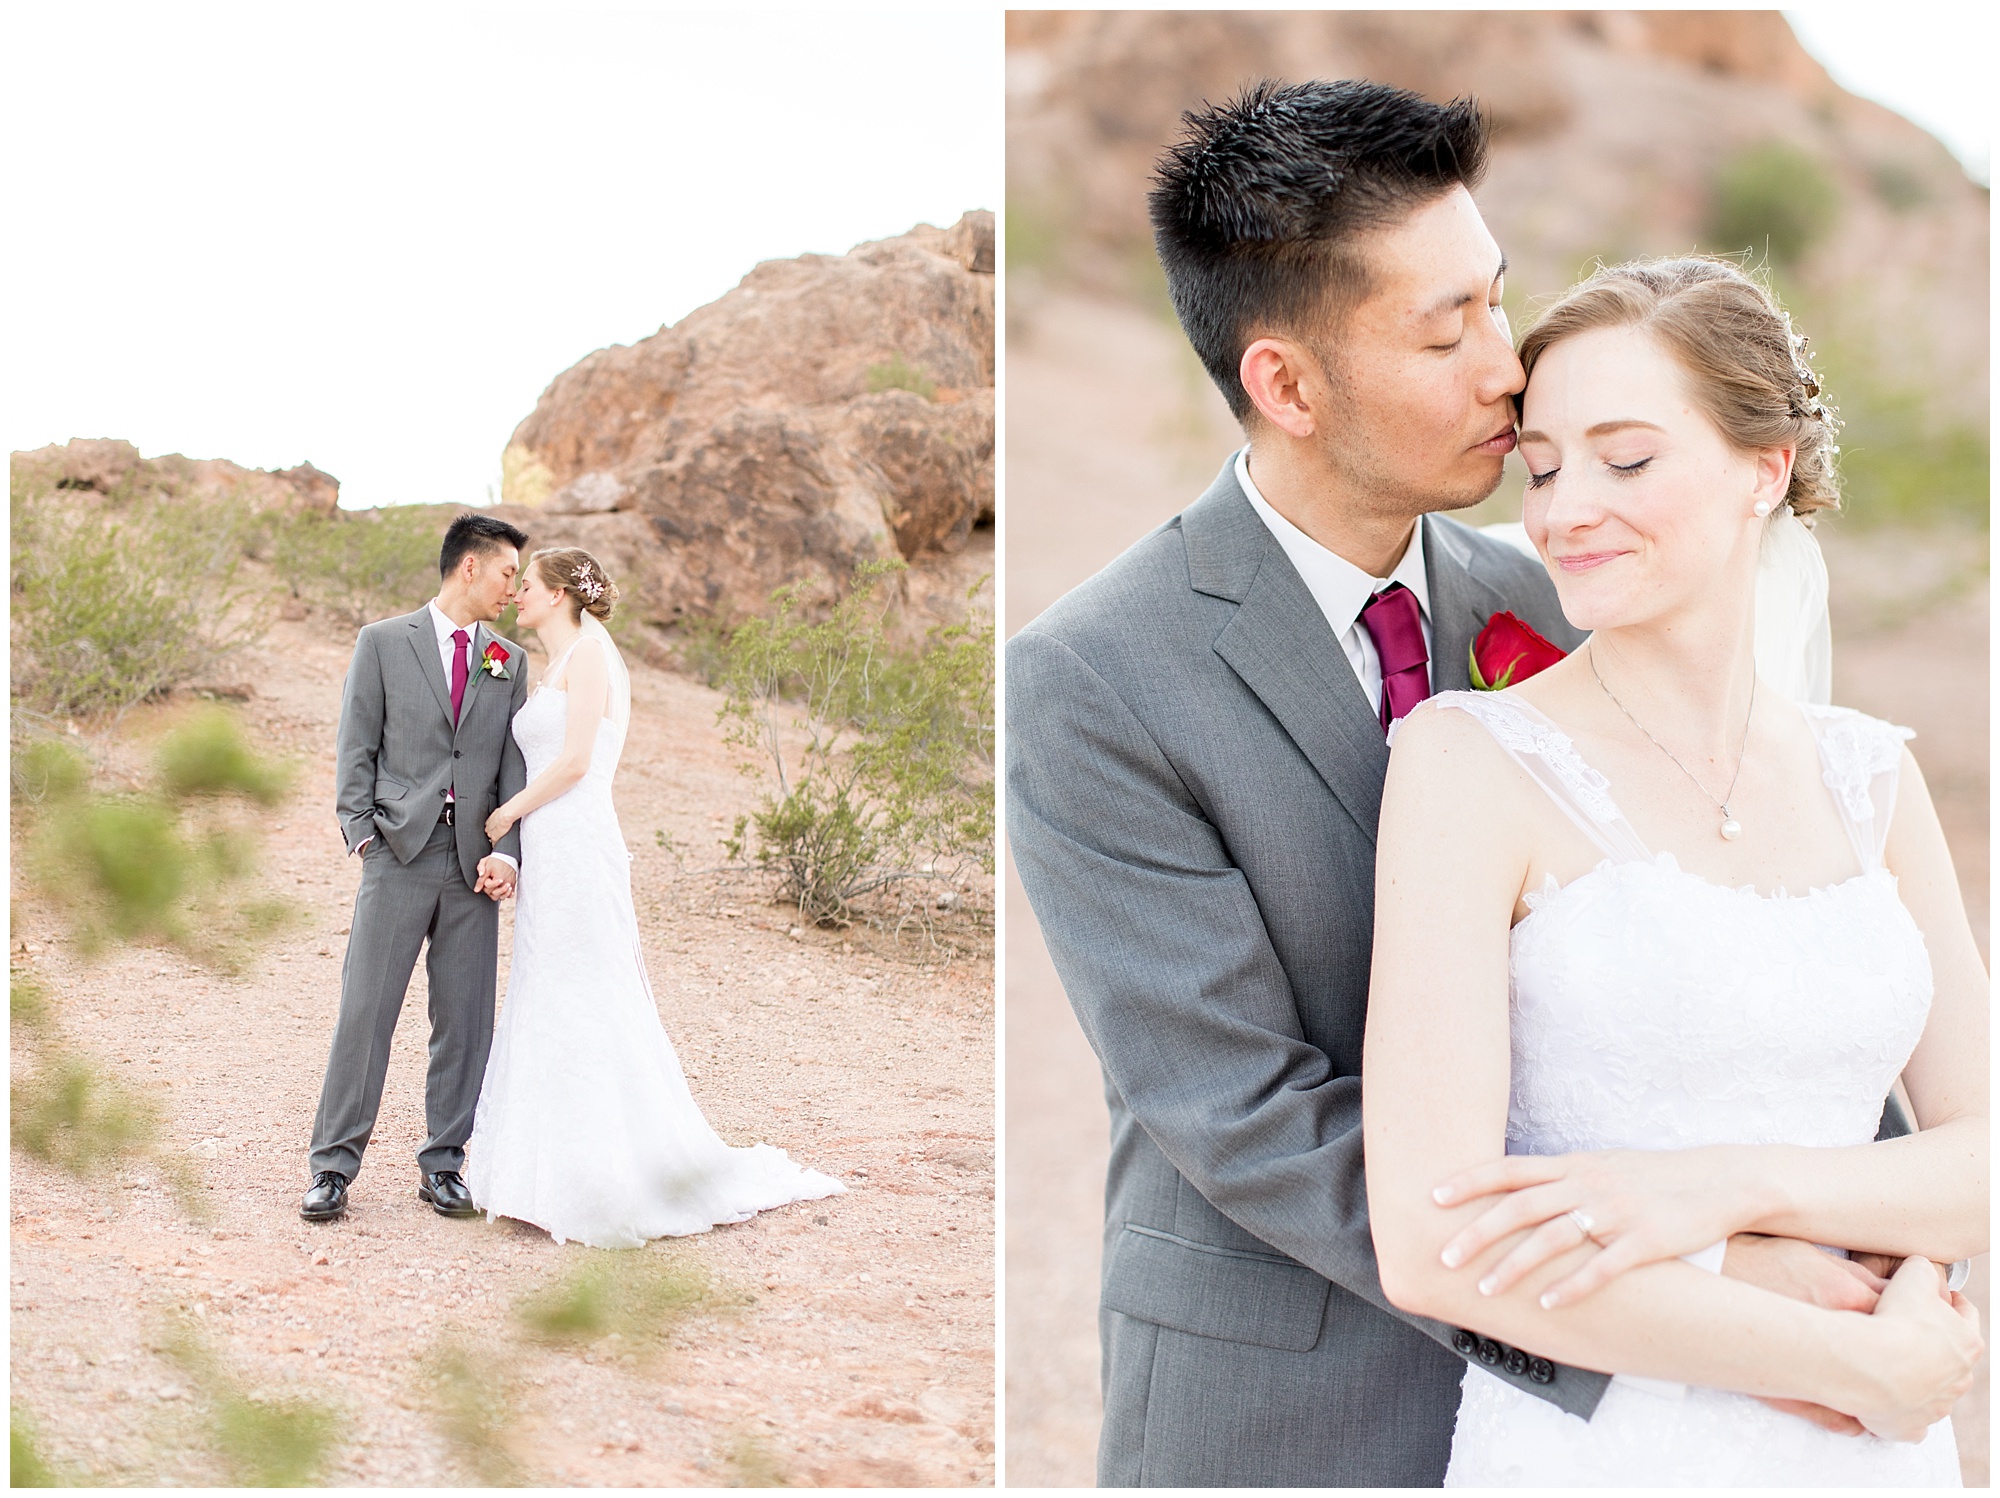 Arizona Heritage Center Wedding | Scottsdale AZ | George and Julie